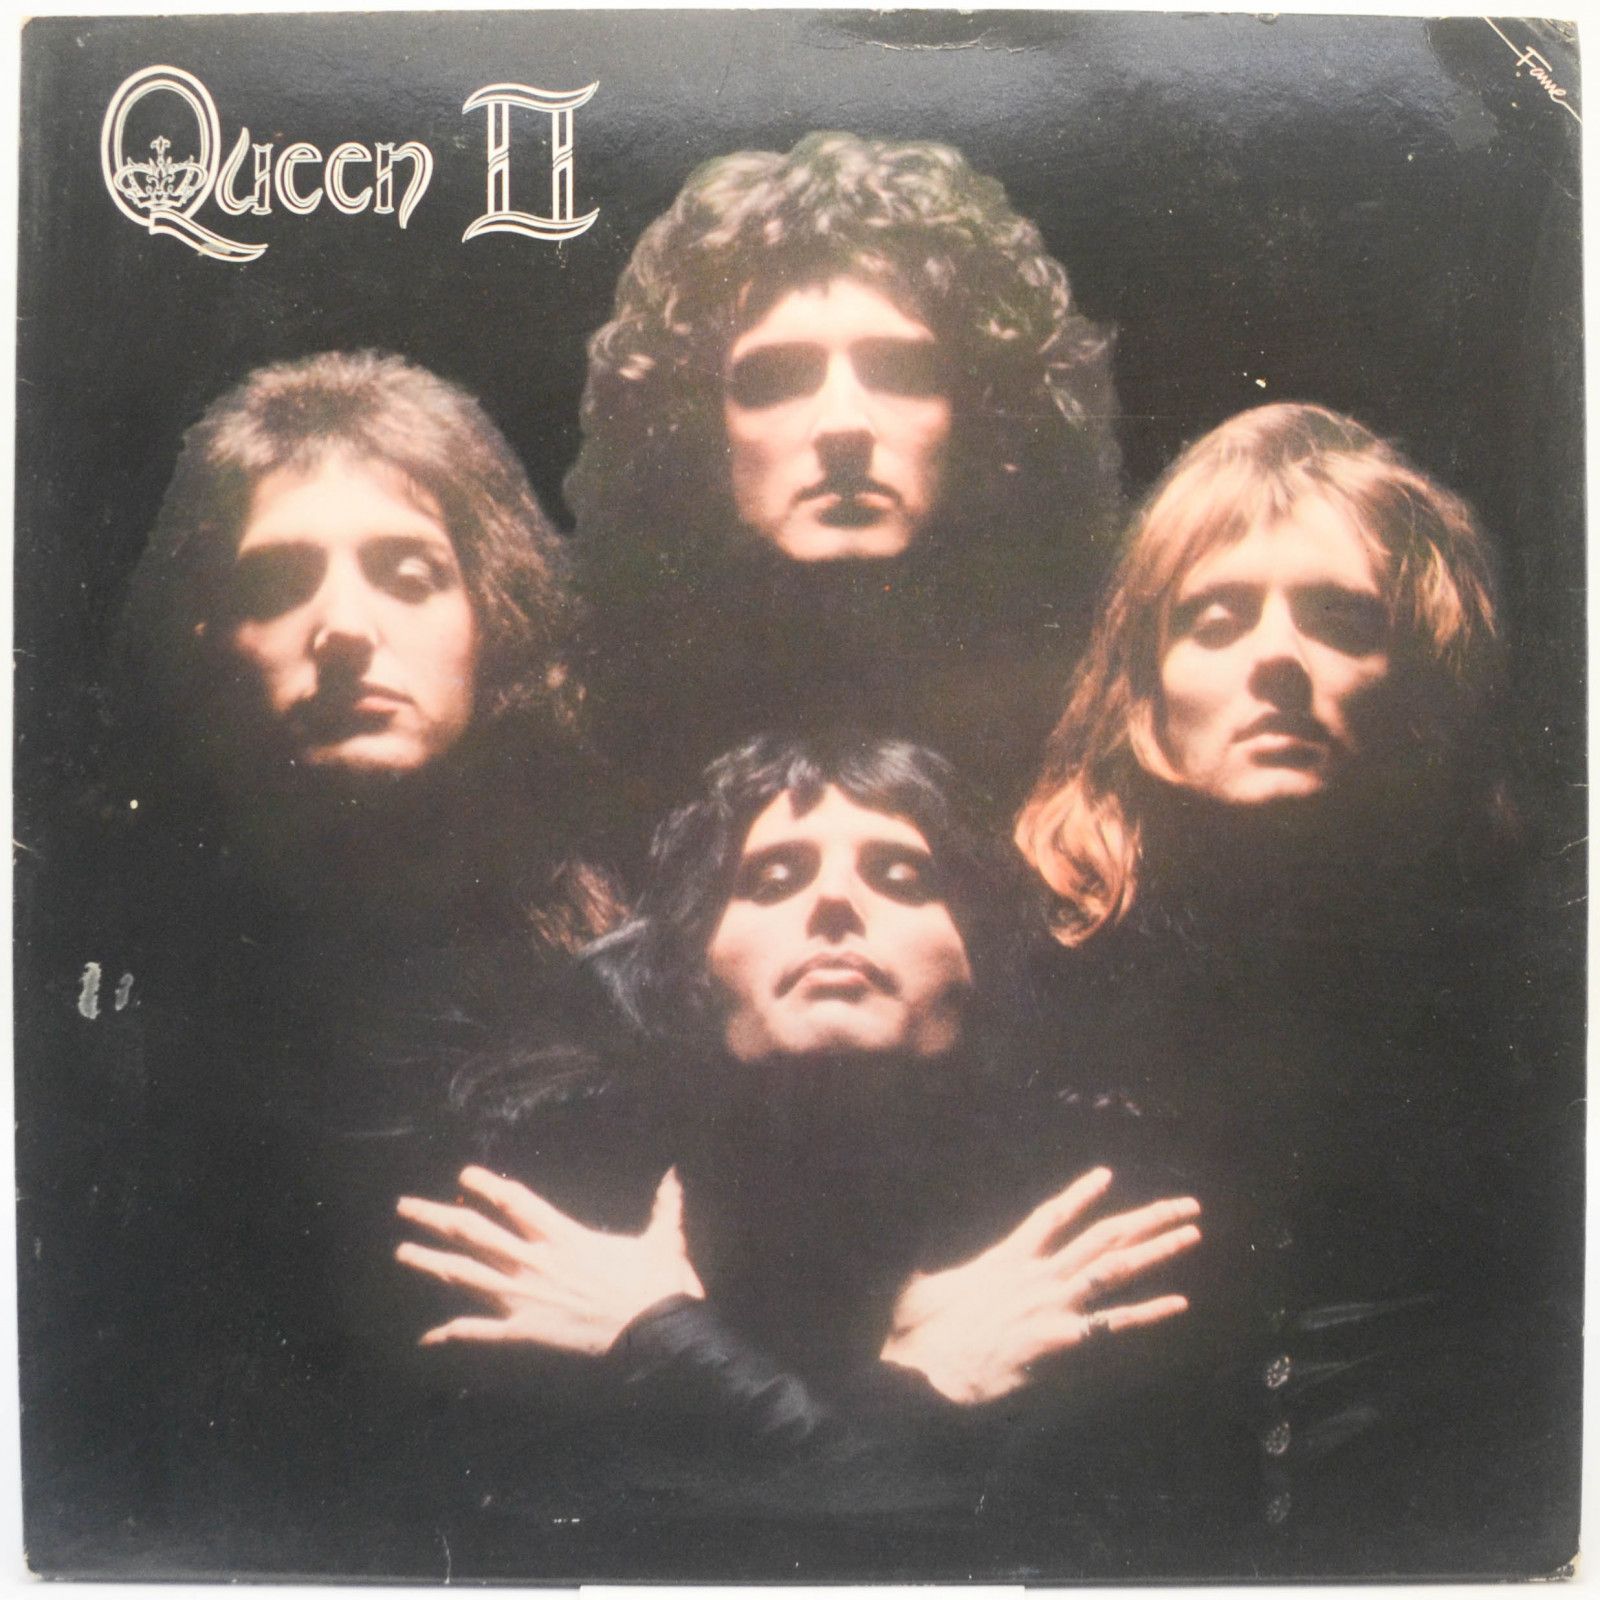 Queen — Queen II (UK), 1974